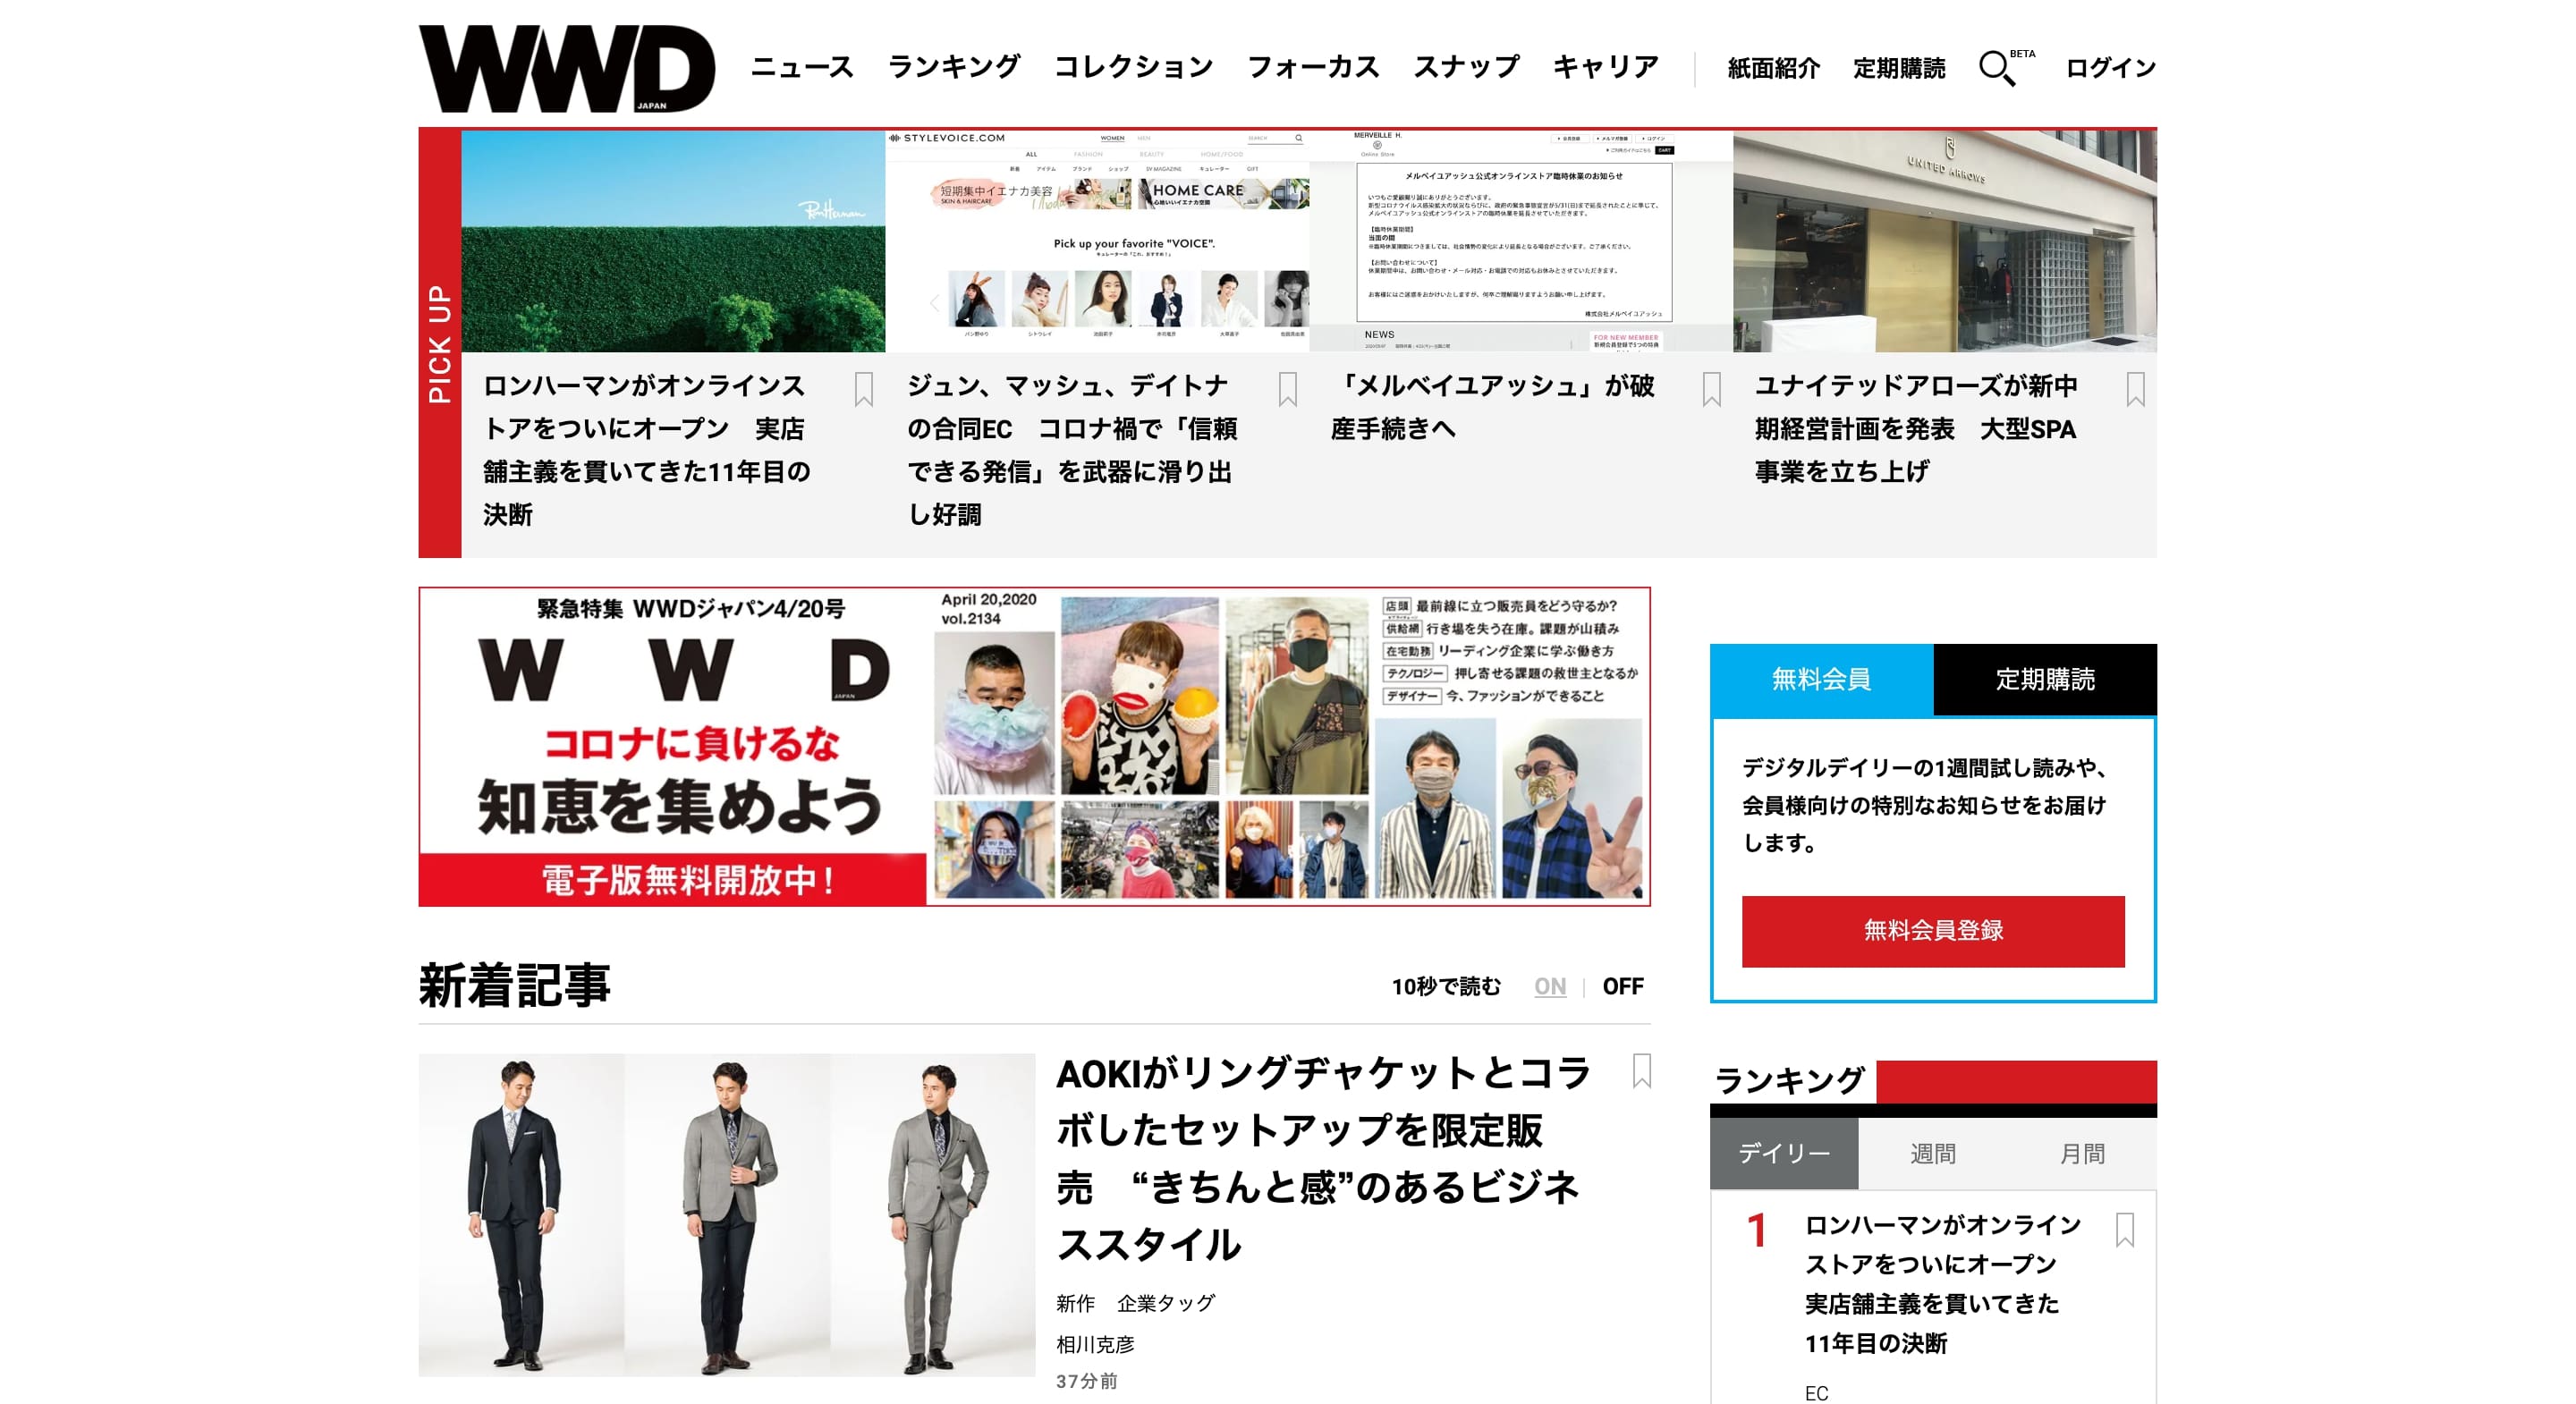 WWD JAPAN.com